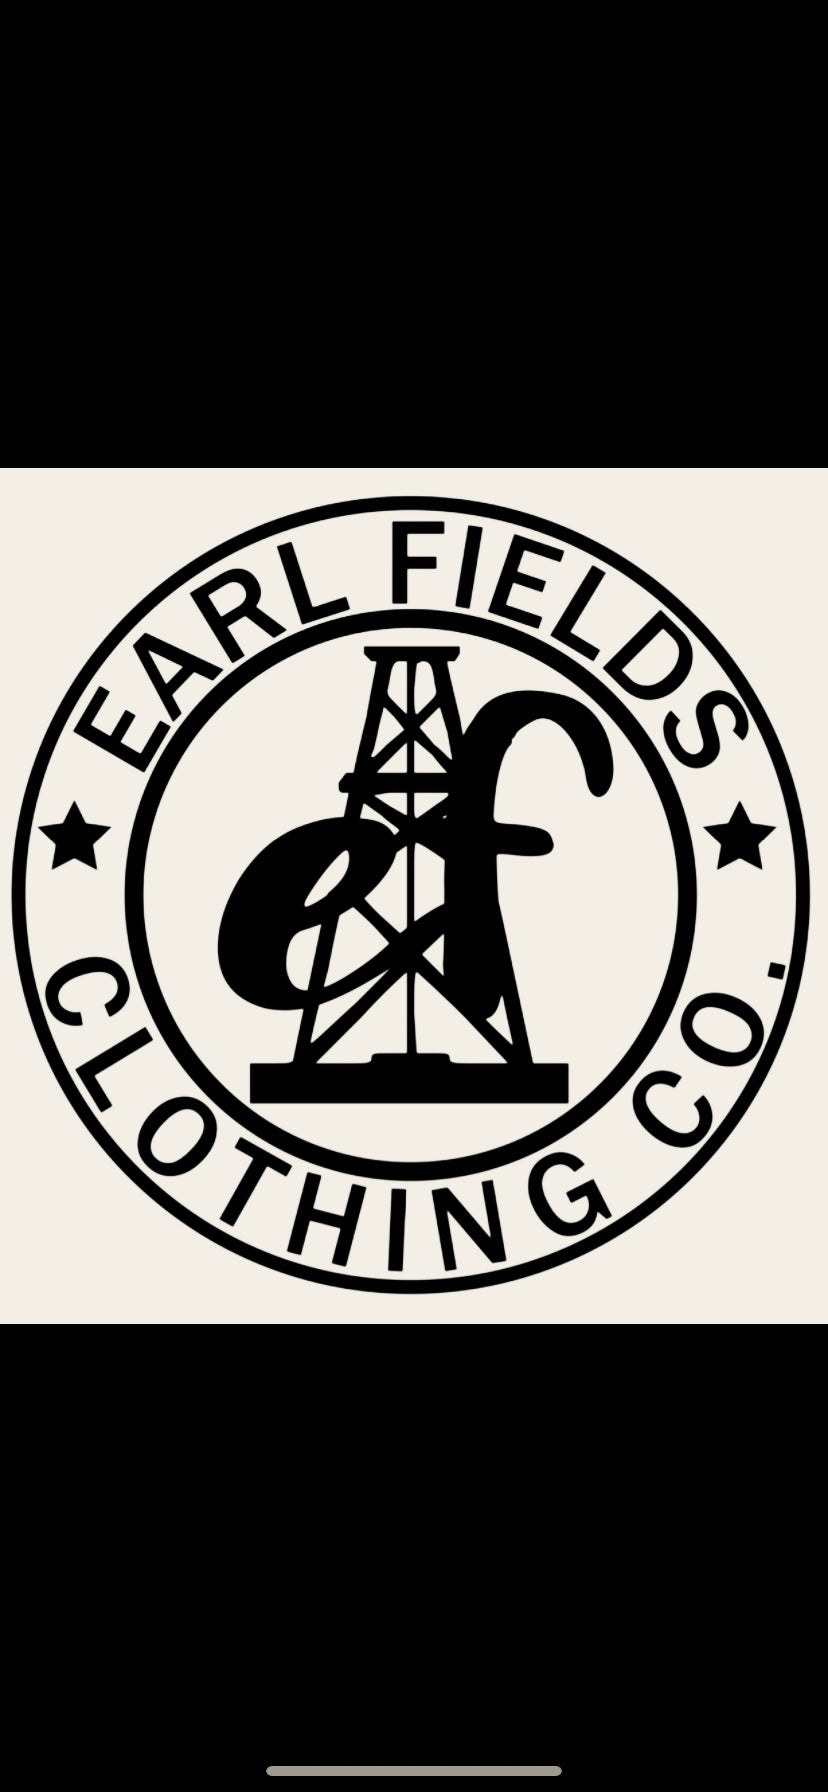 EARL FIELDS CLOTHING CO.